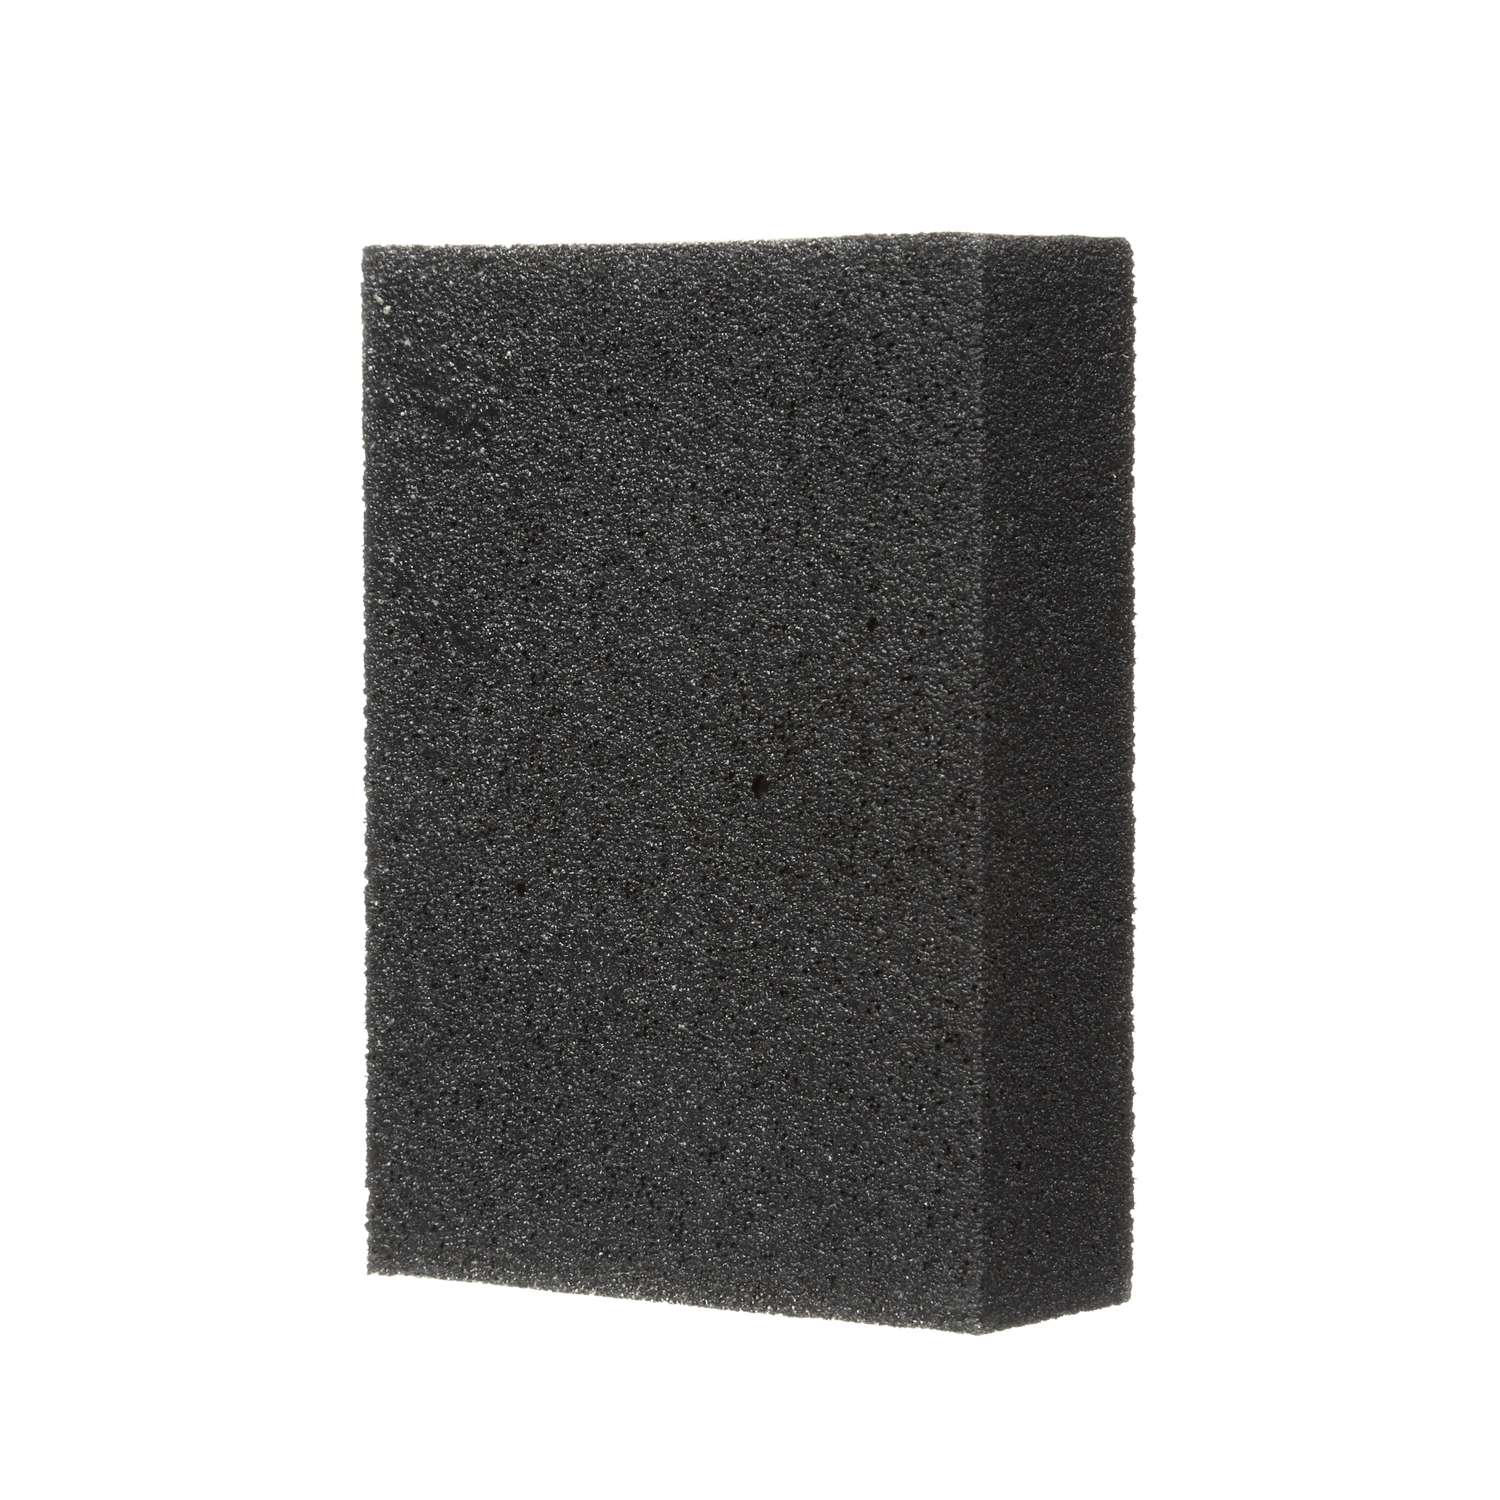 3M Full Size Sanding Sponge, Medium, 3-3/4in x 2-5/8in x 1in